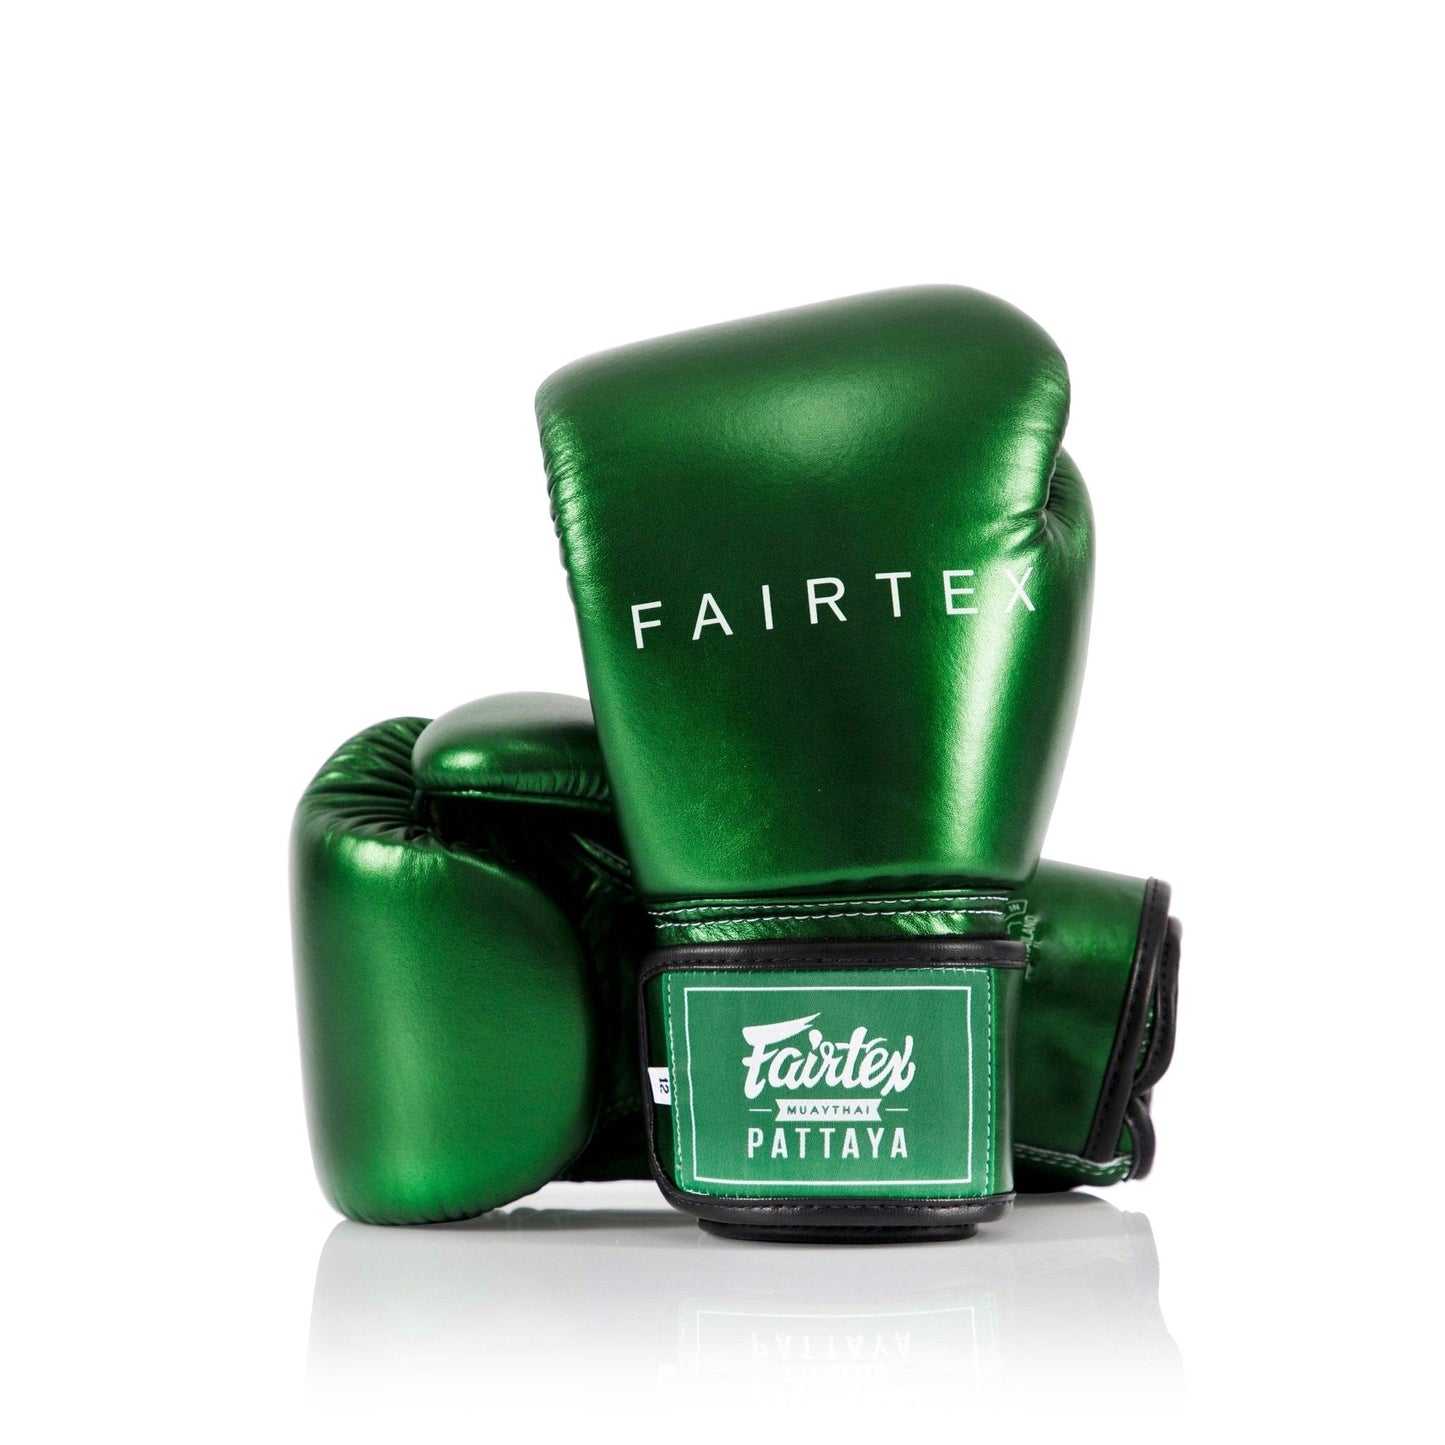 FAIRTEX นวมชกมวย BGV22 METALLIC Green